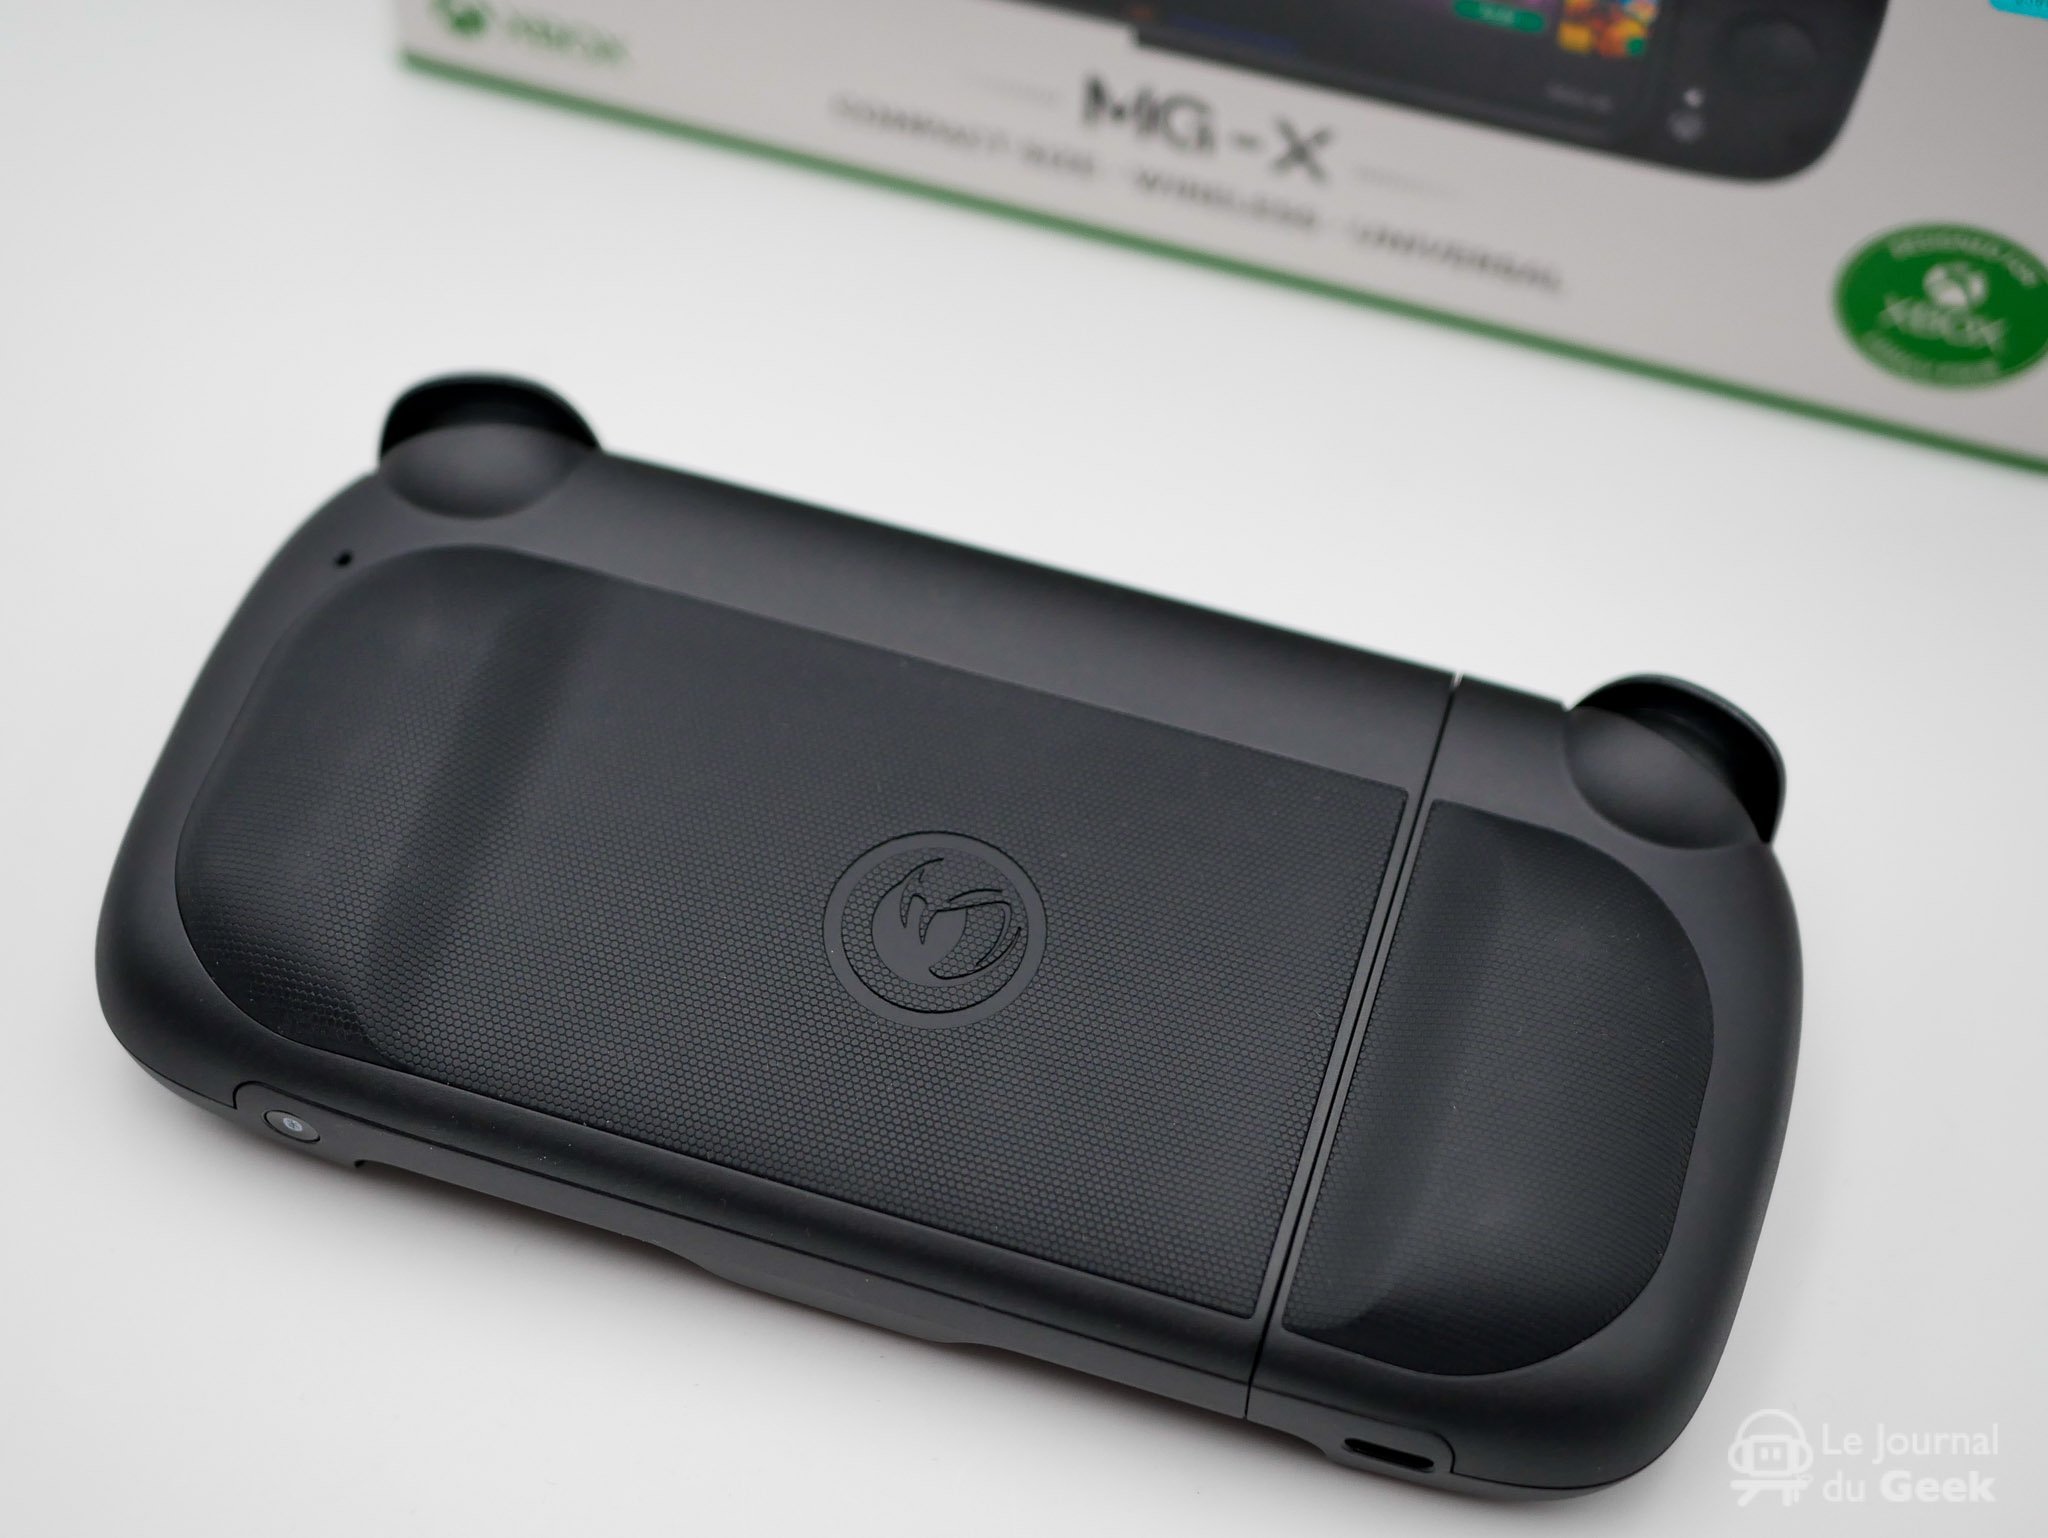 La manette MG-X Pro de Nacon se décline maintenant pour iPhone